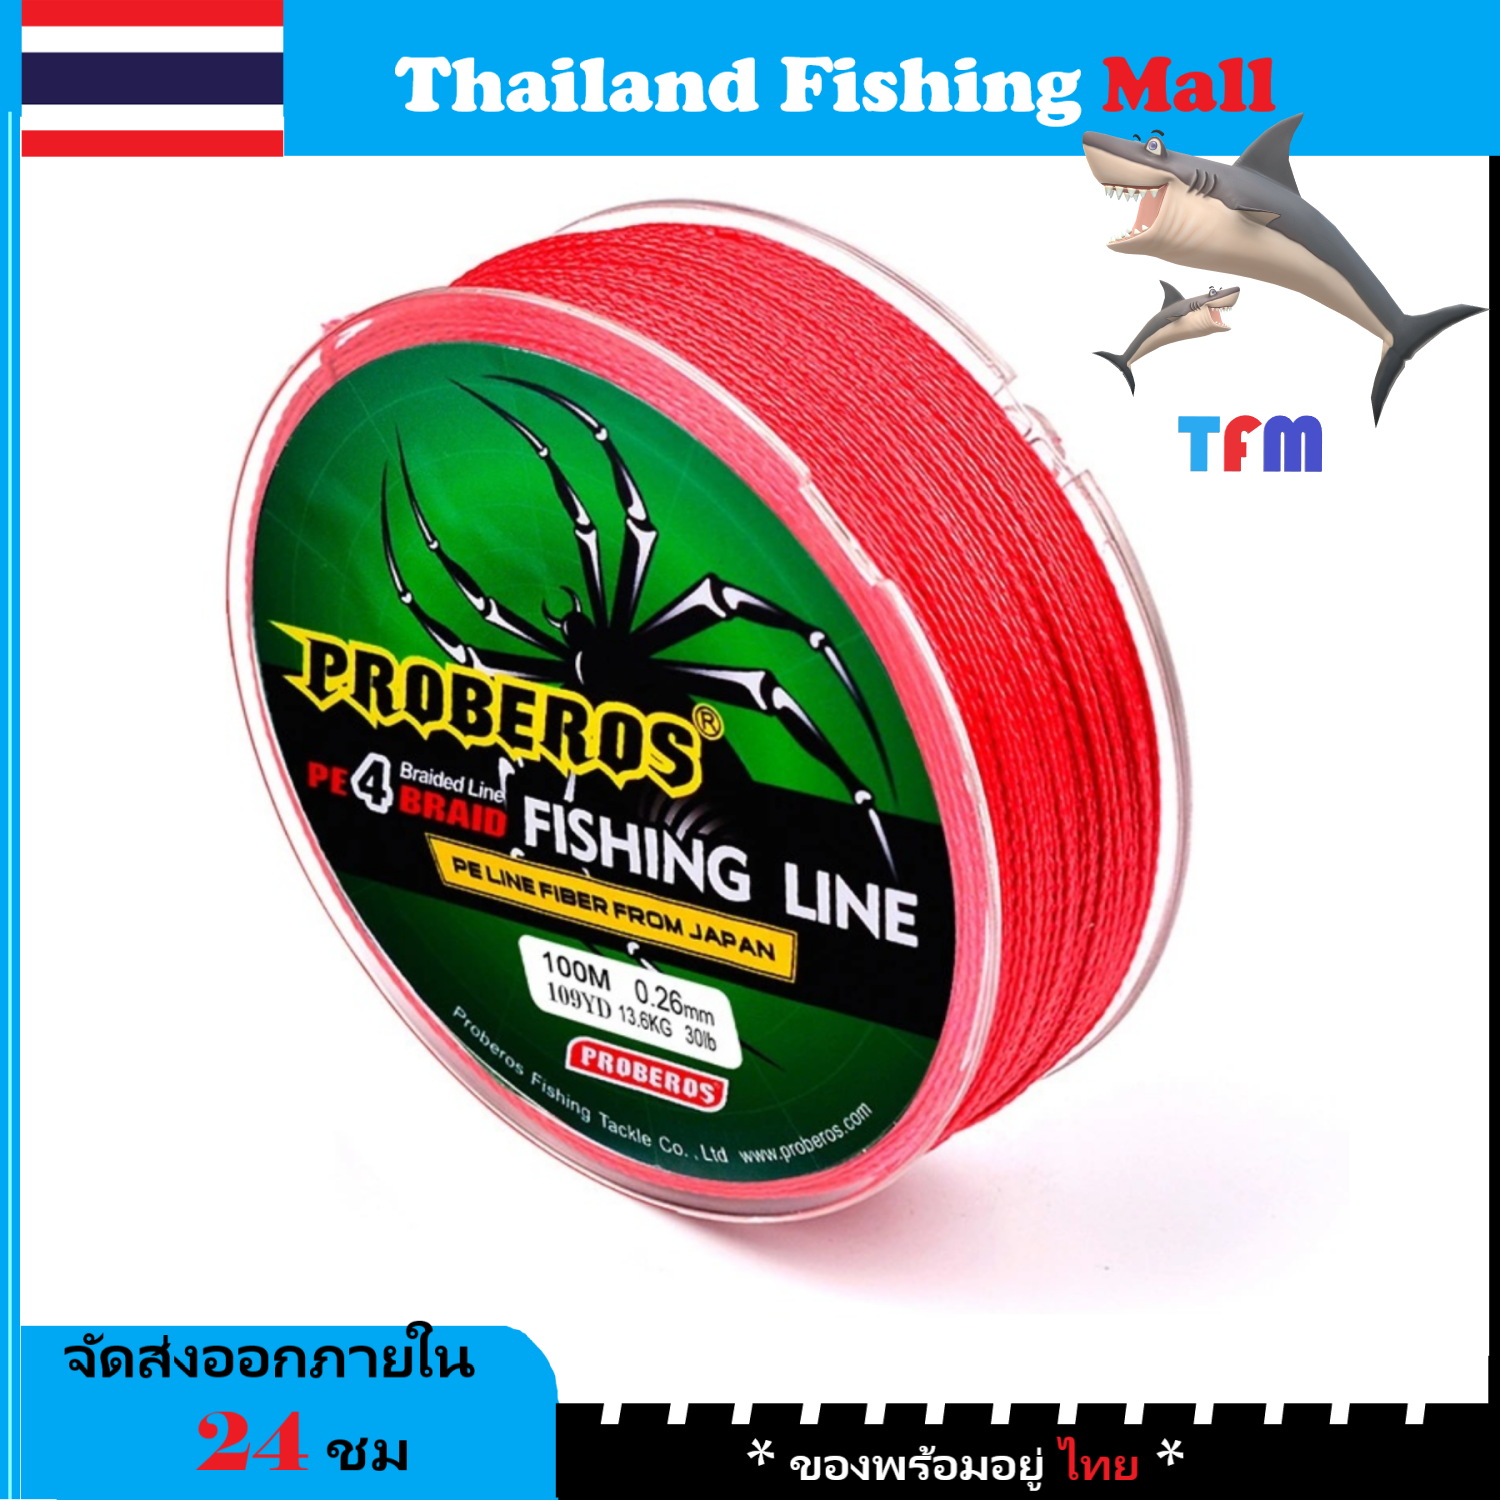 1-2 วัน (ส่งไว ราคาส่ง) สาย PE ถัก 4 สีเทา เหนียว ทน ยาว 100 เมตร - ศูนย์การค้าไทยฟิชชิ่ง [ Thailand Fishing Mall ] Fishing line wire Proberos Pro Beros